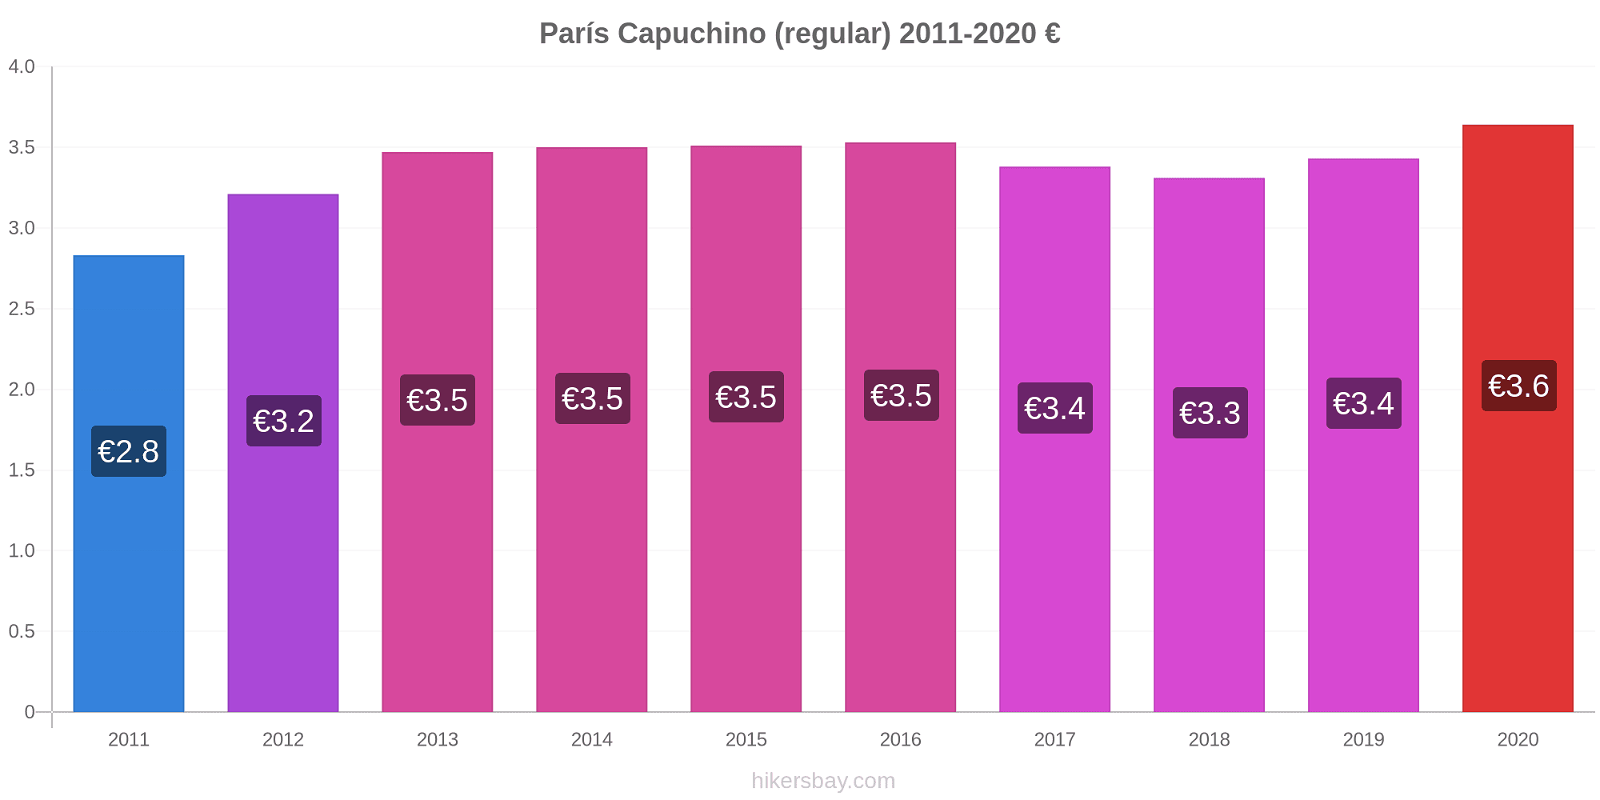 París cambios de precios Capuchino (regular) hikersbay.com